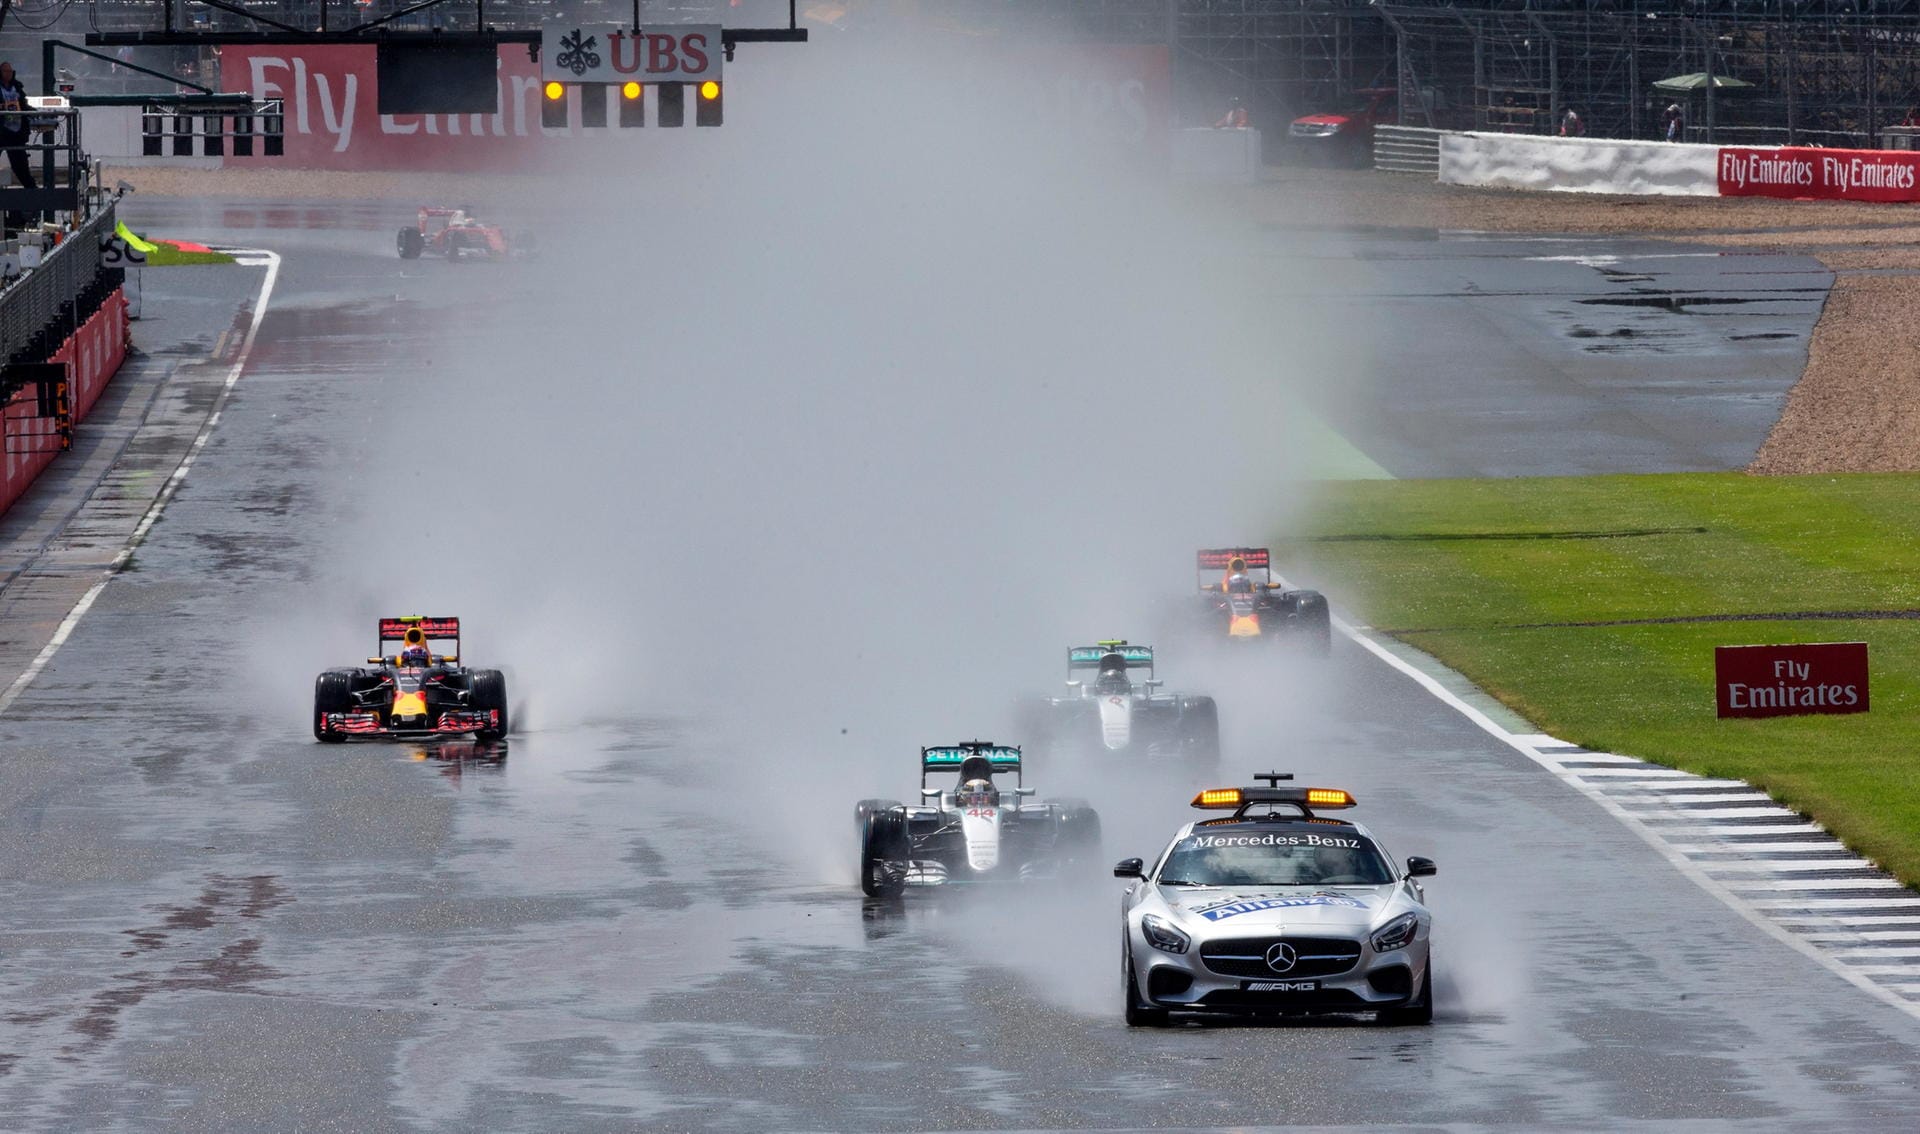 Am Boden werden die Formel-1-Flitzer zunächst etwas ausgebremst. Aufgrund starker Regenfälle erfolgt der Start hinter dem Safety Car.